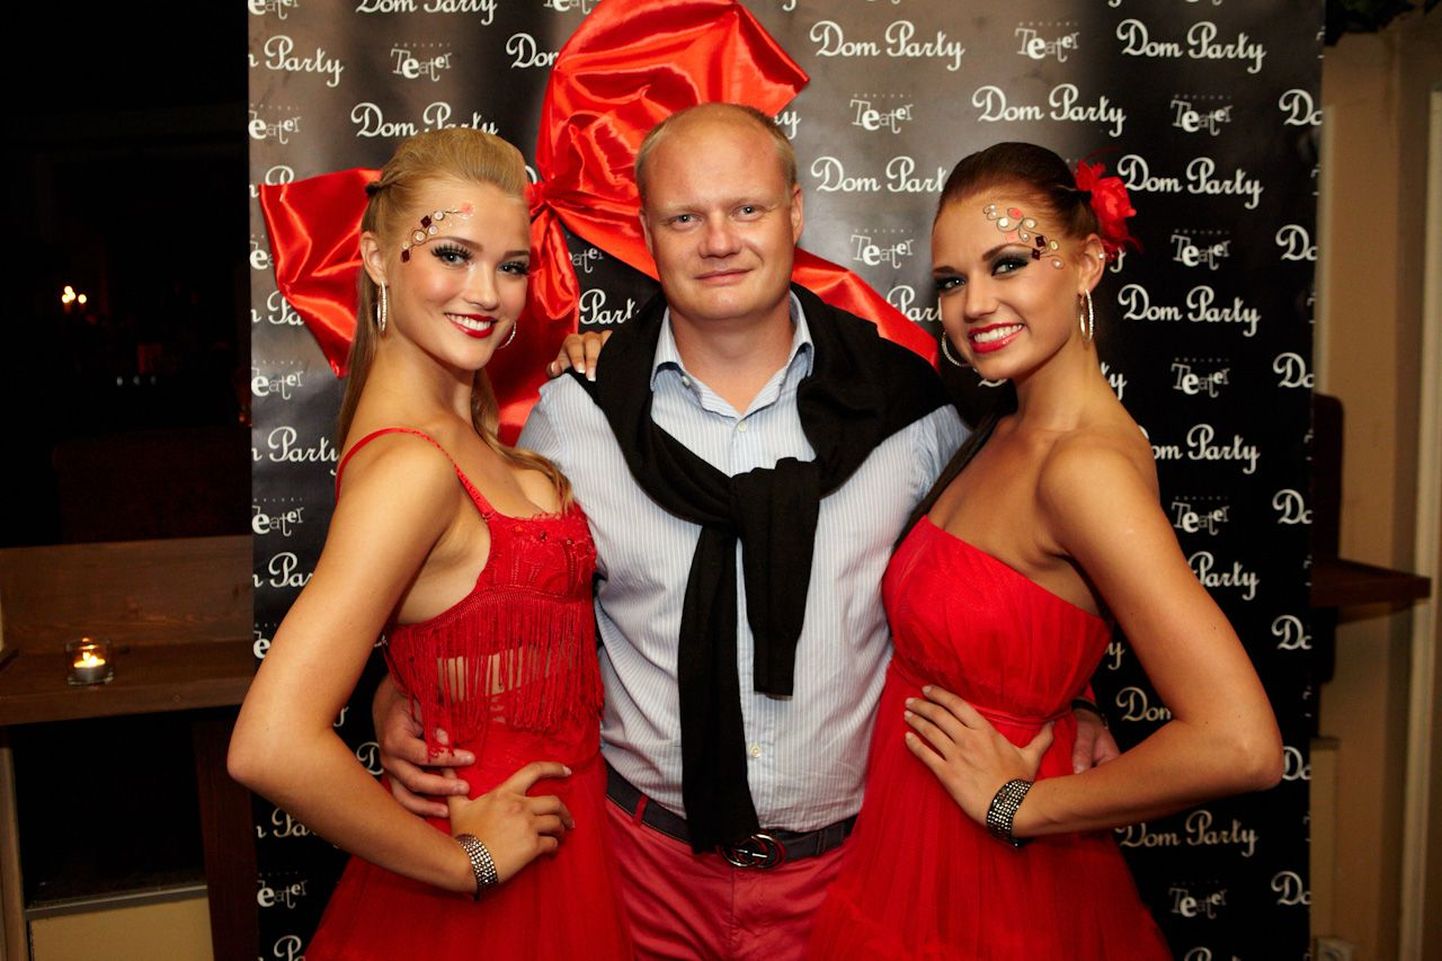 Dom Party RED kostitas külalisi klubis Teater parima meelelahutusega!
Tiiu Järviste elukaaslane kaunitaride kütkeis